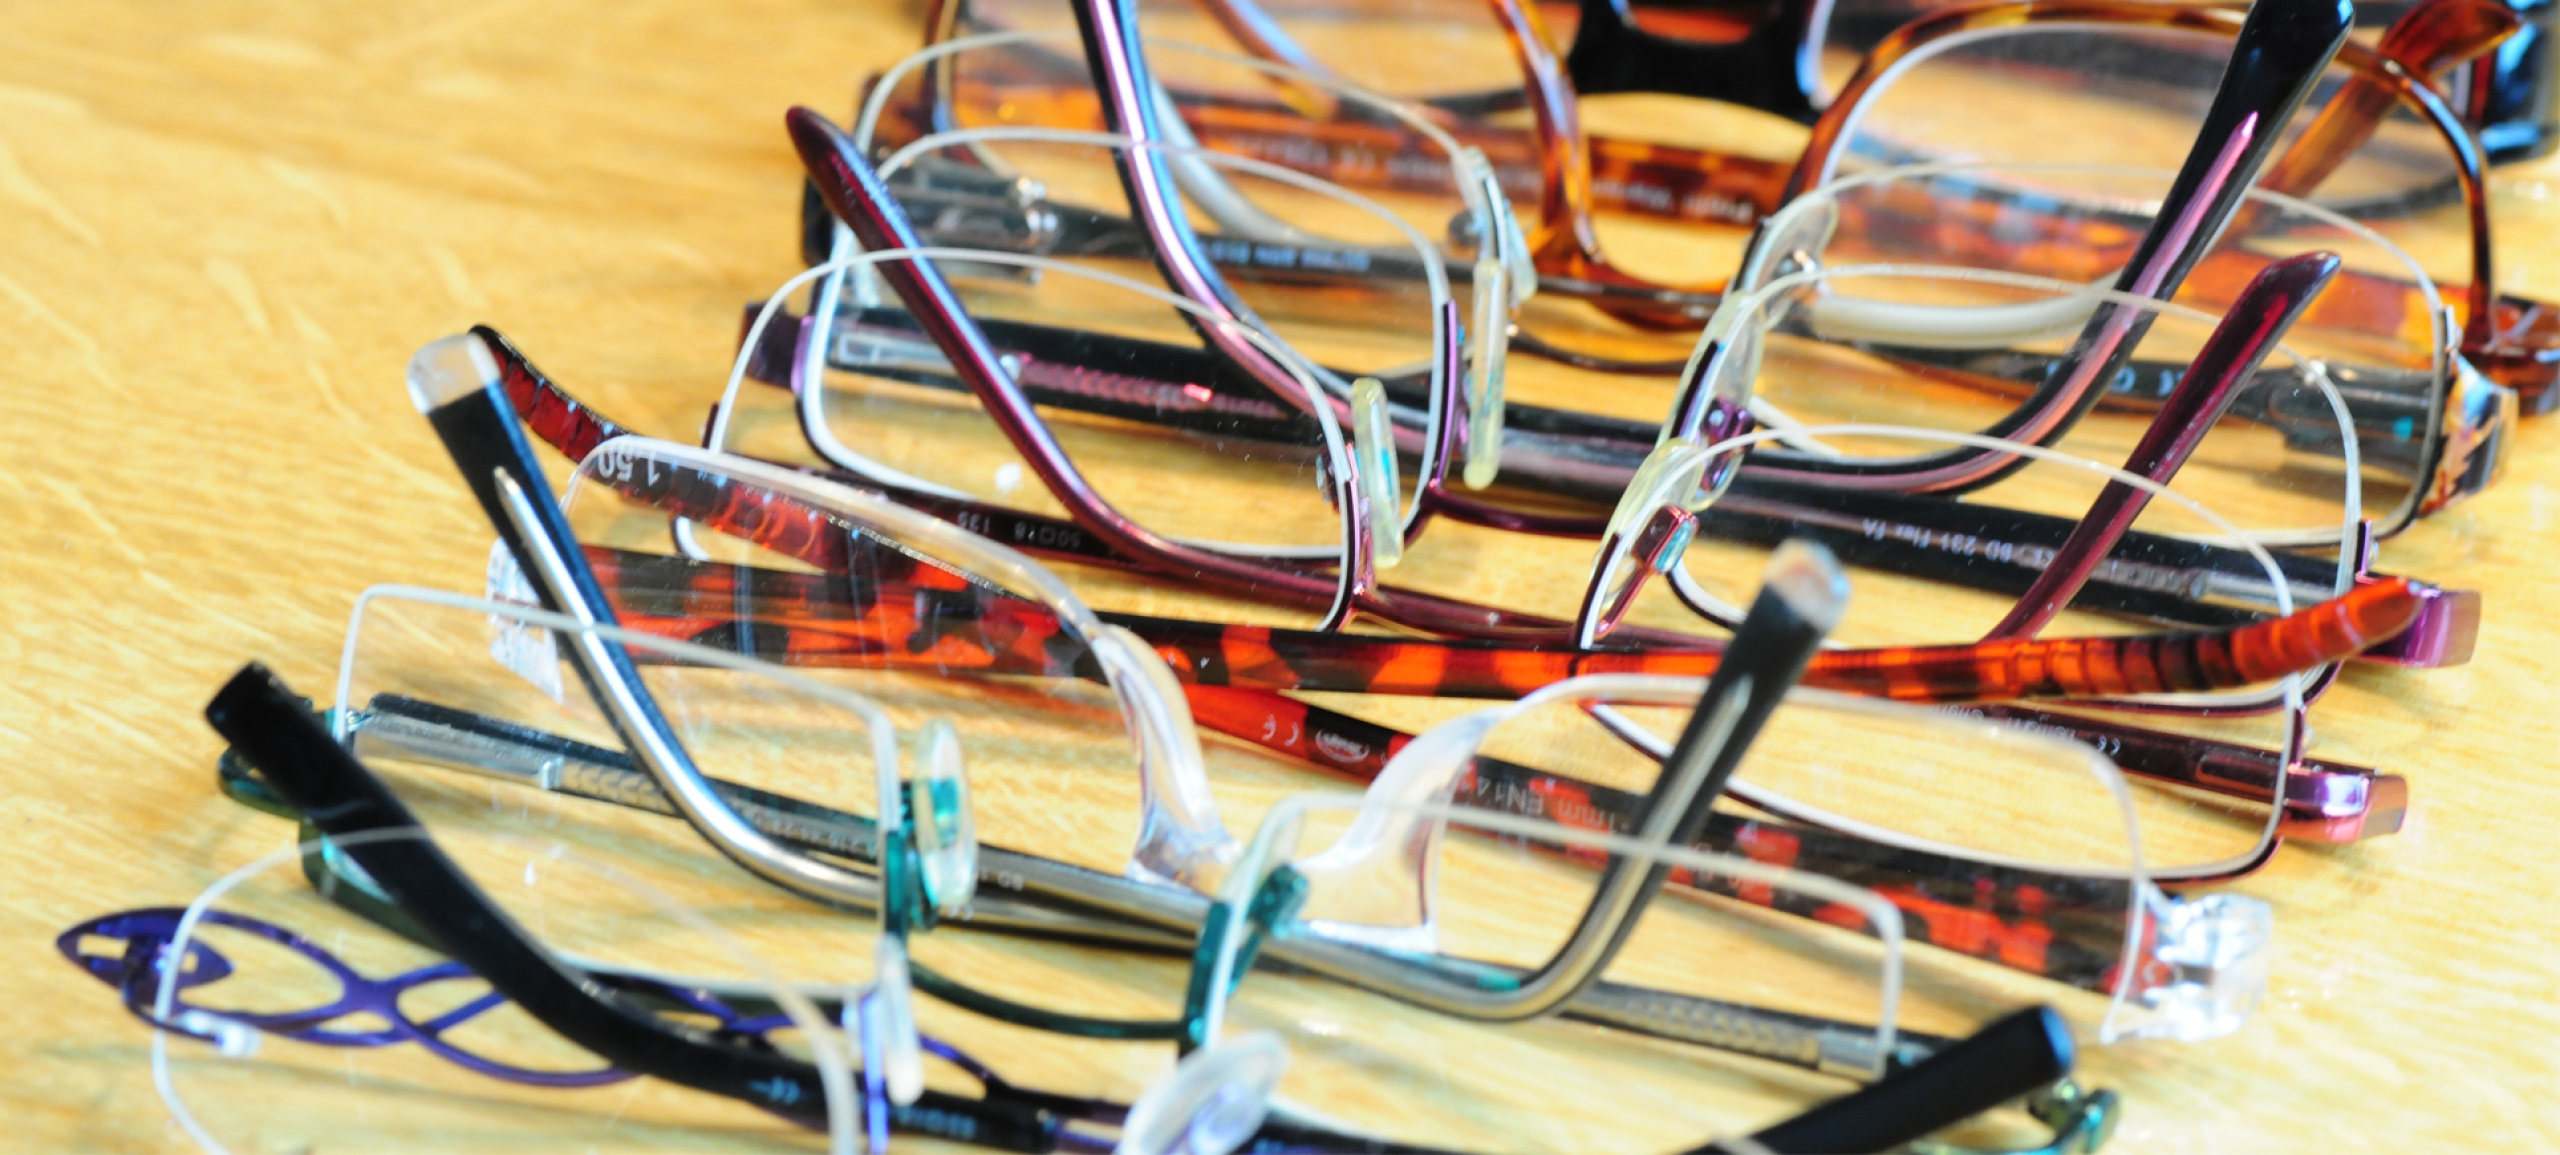 Brillengestelle zur Auswahl auf Tisch